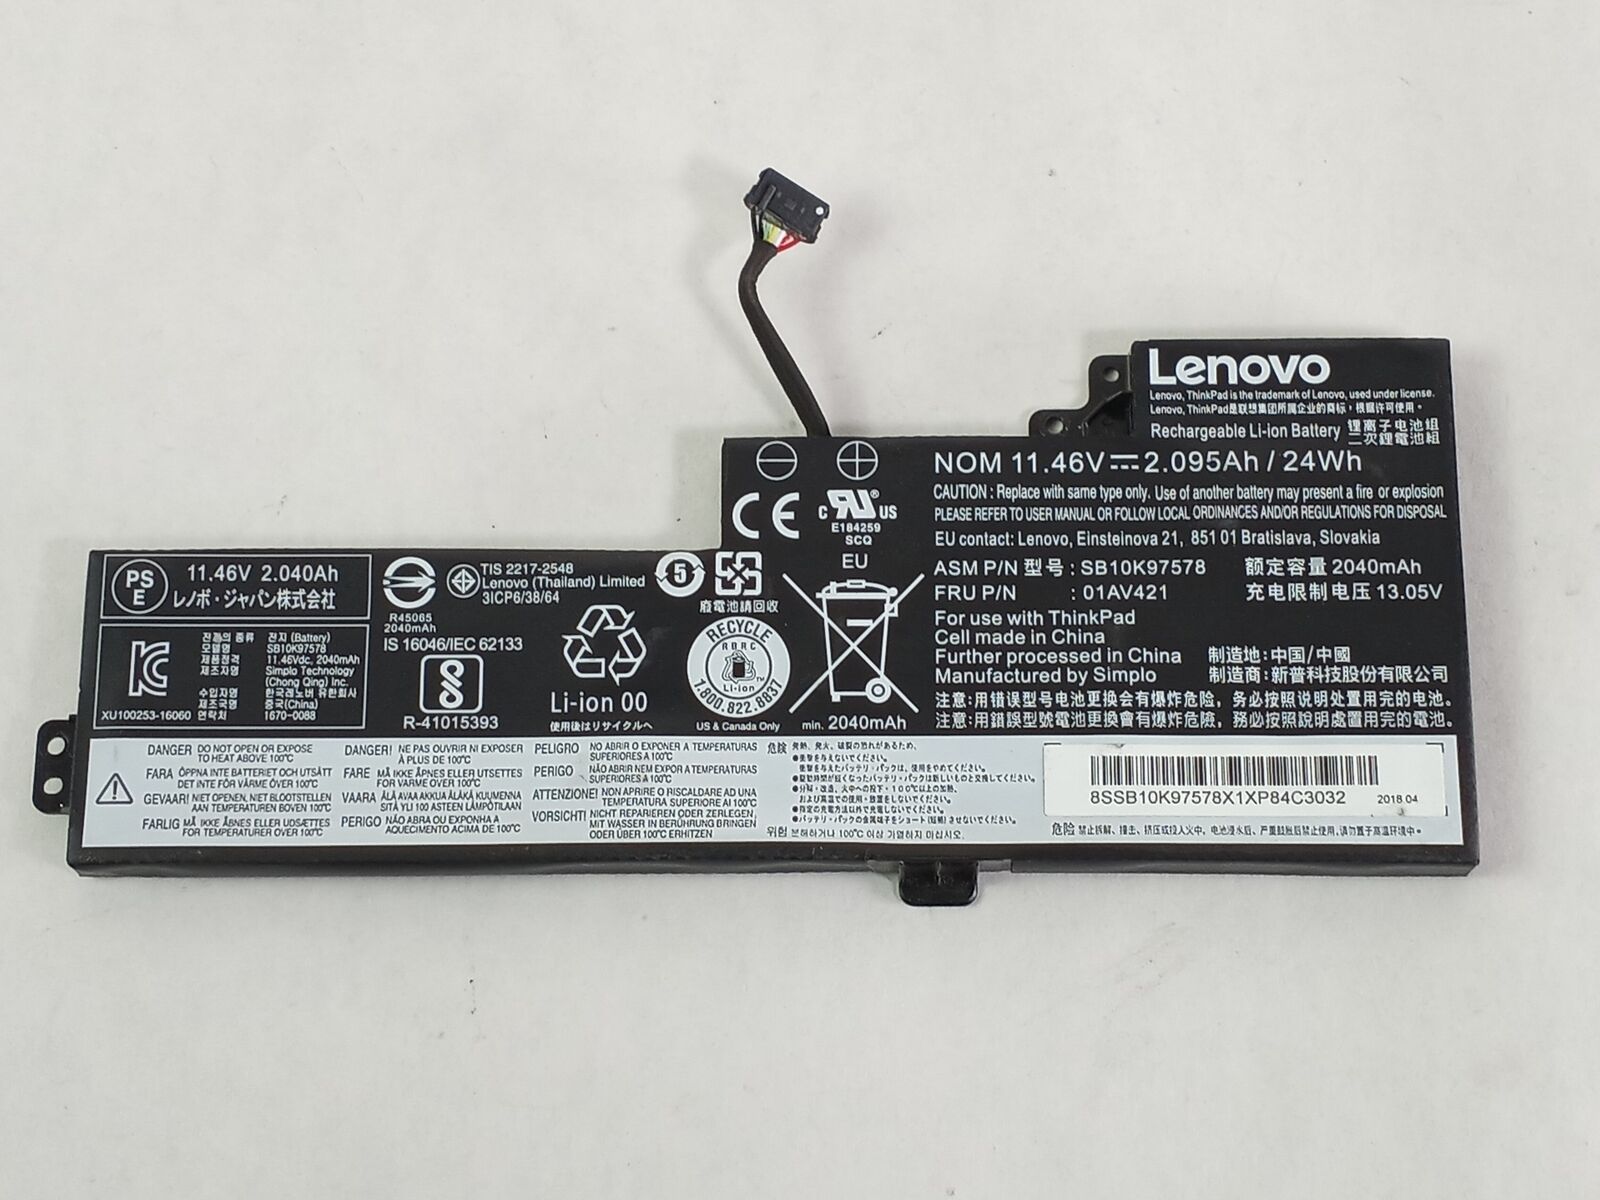 Lot of 10 Lenovo 01AV421 6 Cell 2040mAh Laptop Battery for ThinkPad T470 / T480